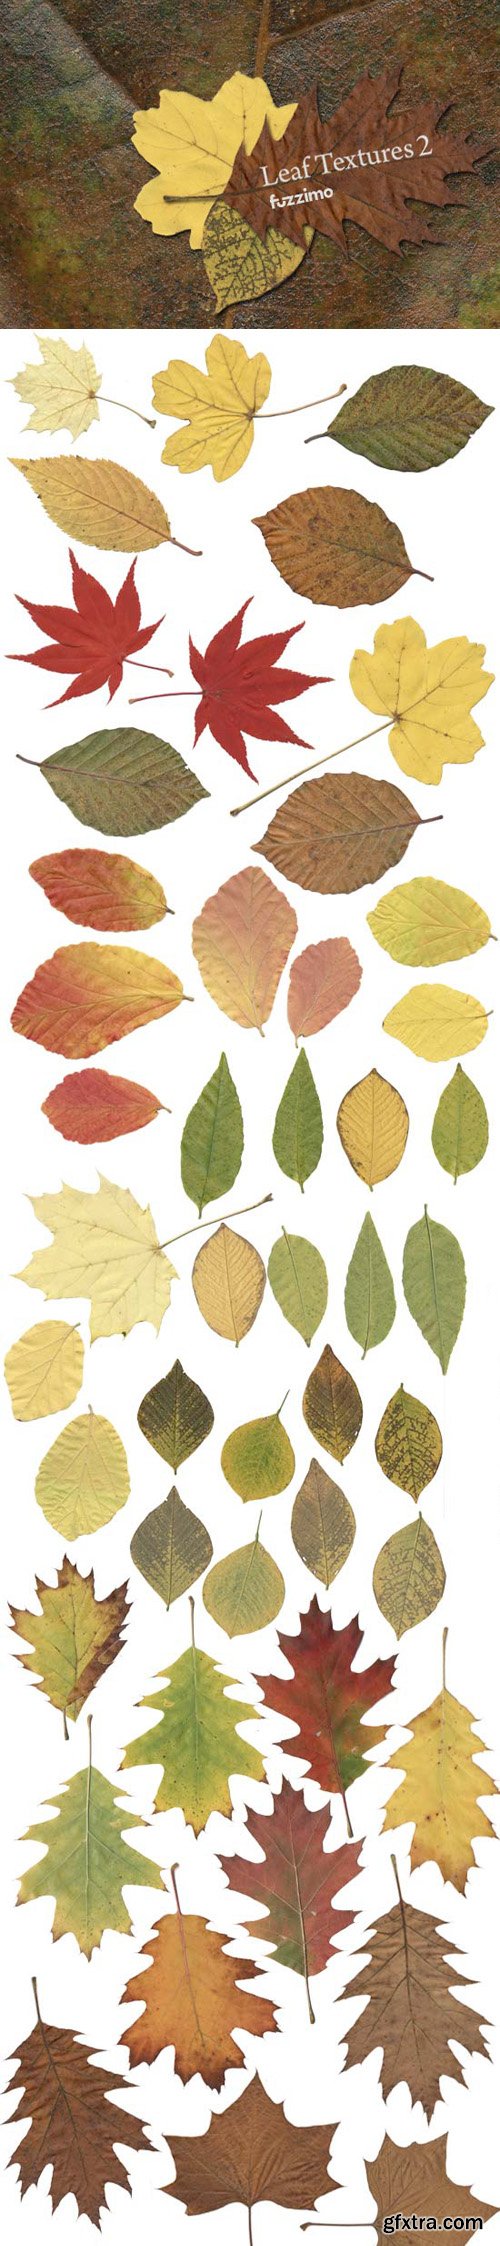 Autumn Leaf Textures, part 2